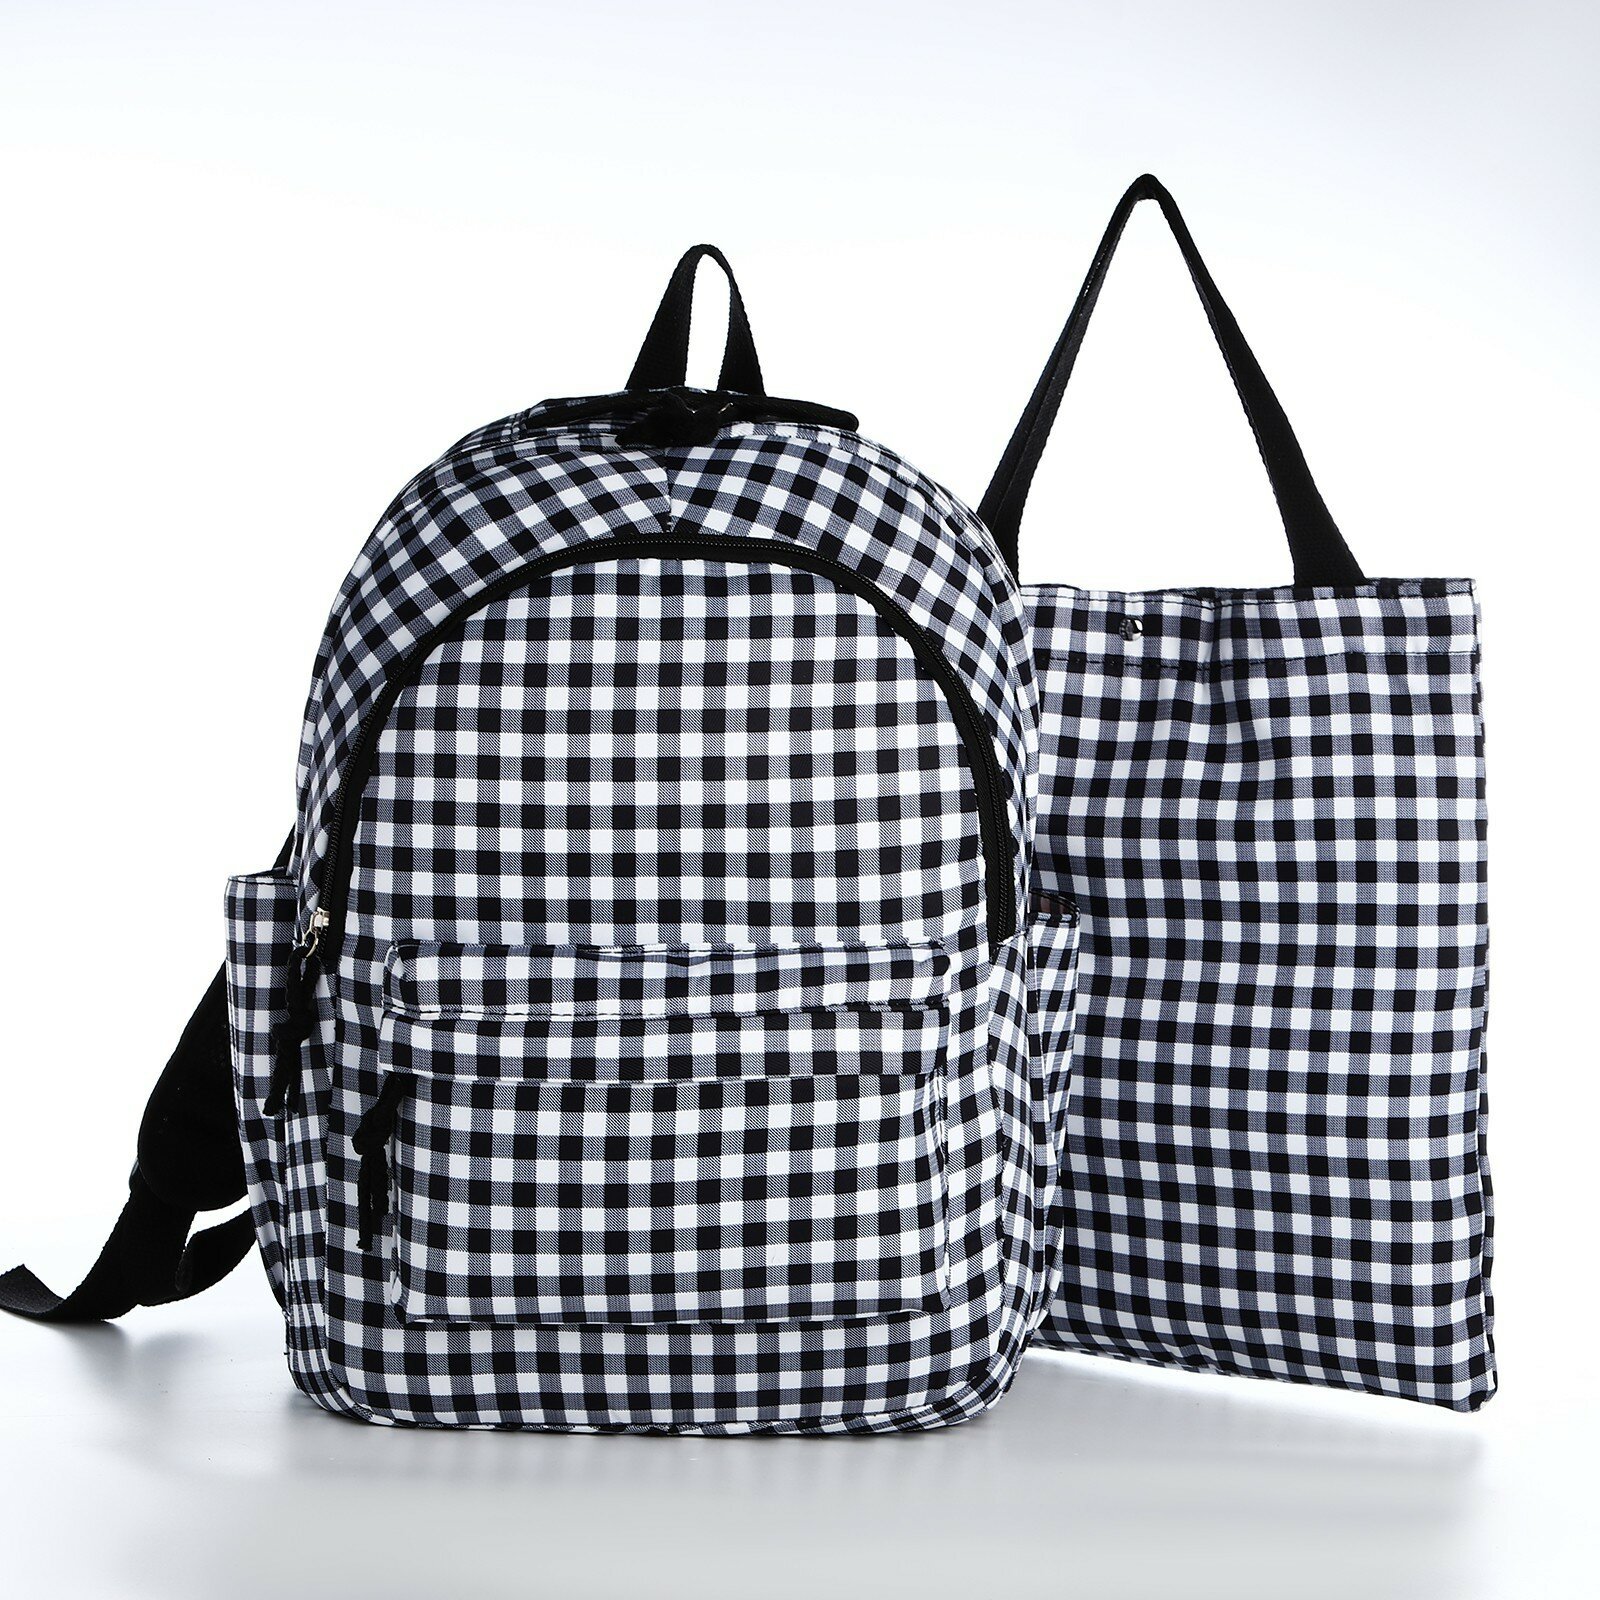 Набор рюкзак молодёжный из текстиля, сумка-шопер, цвет белый/чёрный (1шт.)